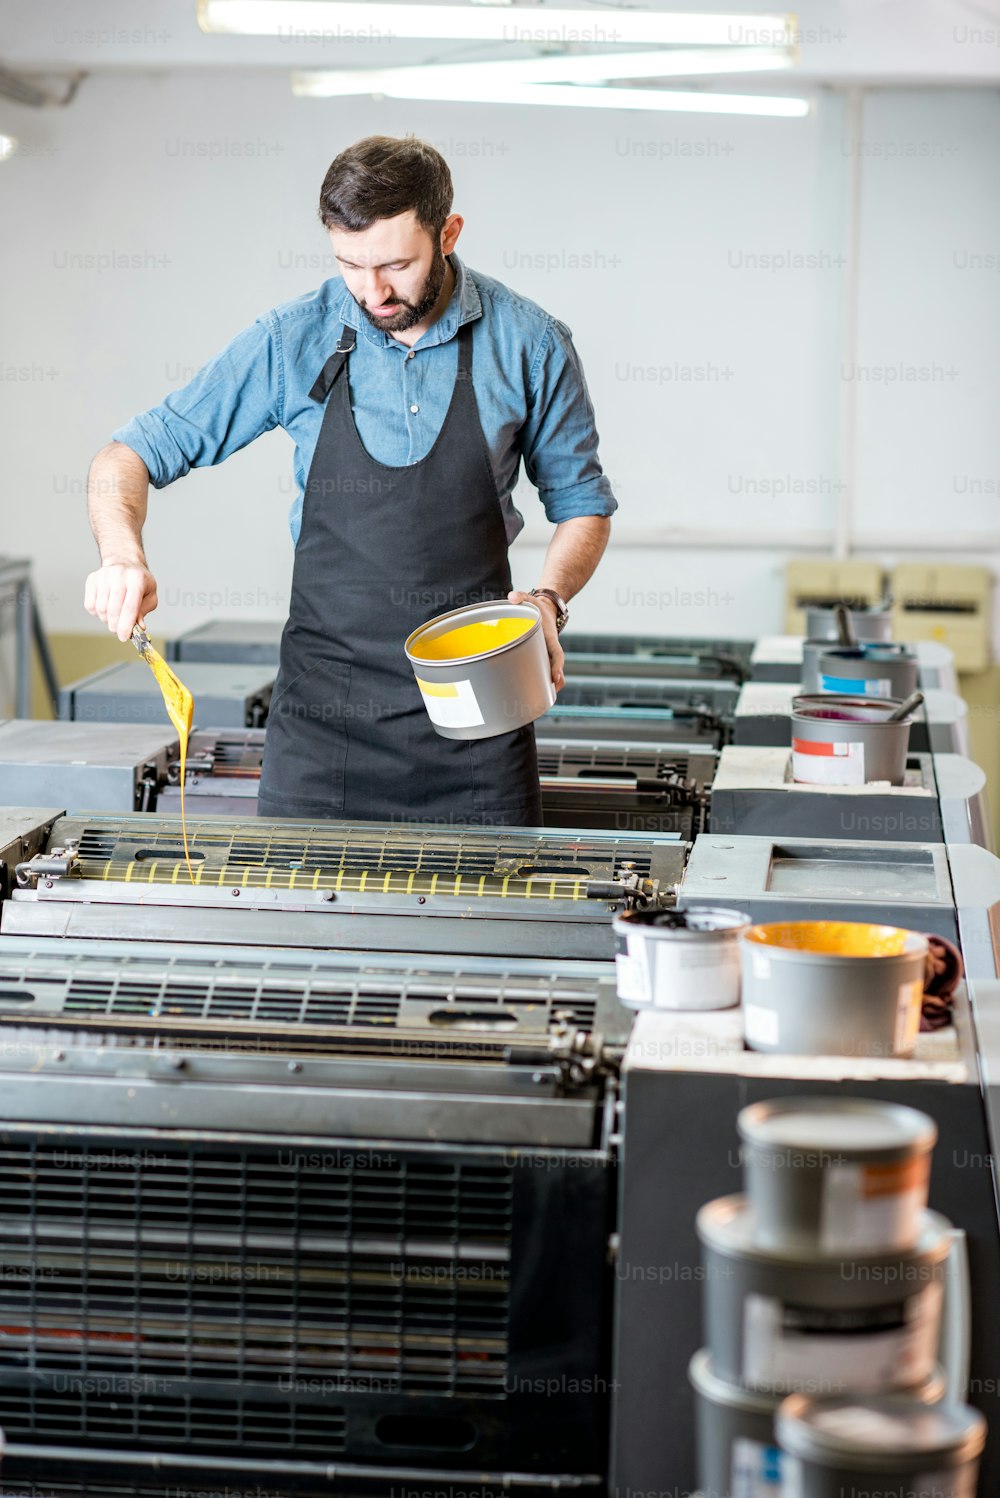 Typograf füllt gelbe Farbe in die Offsetmaschine der Druckerei